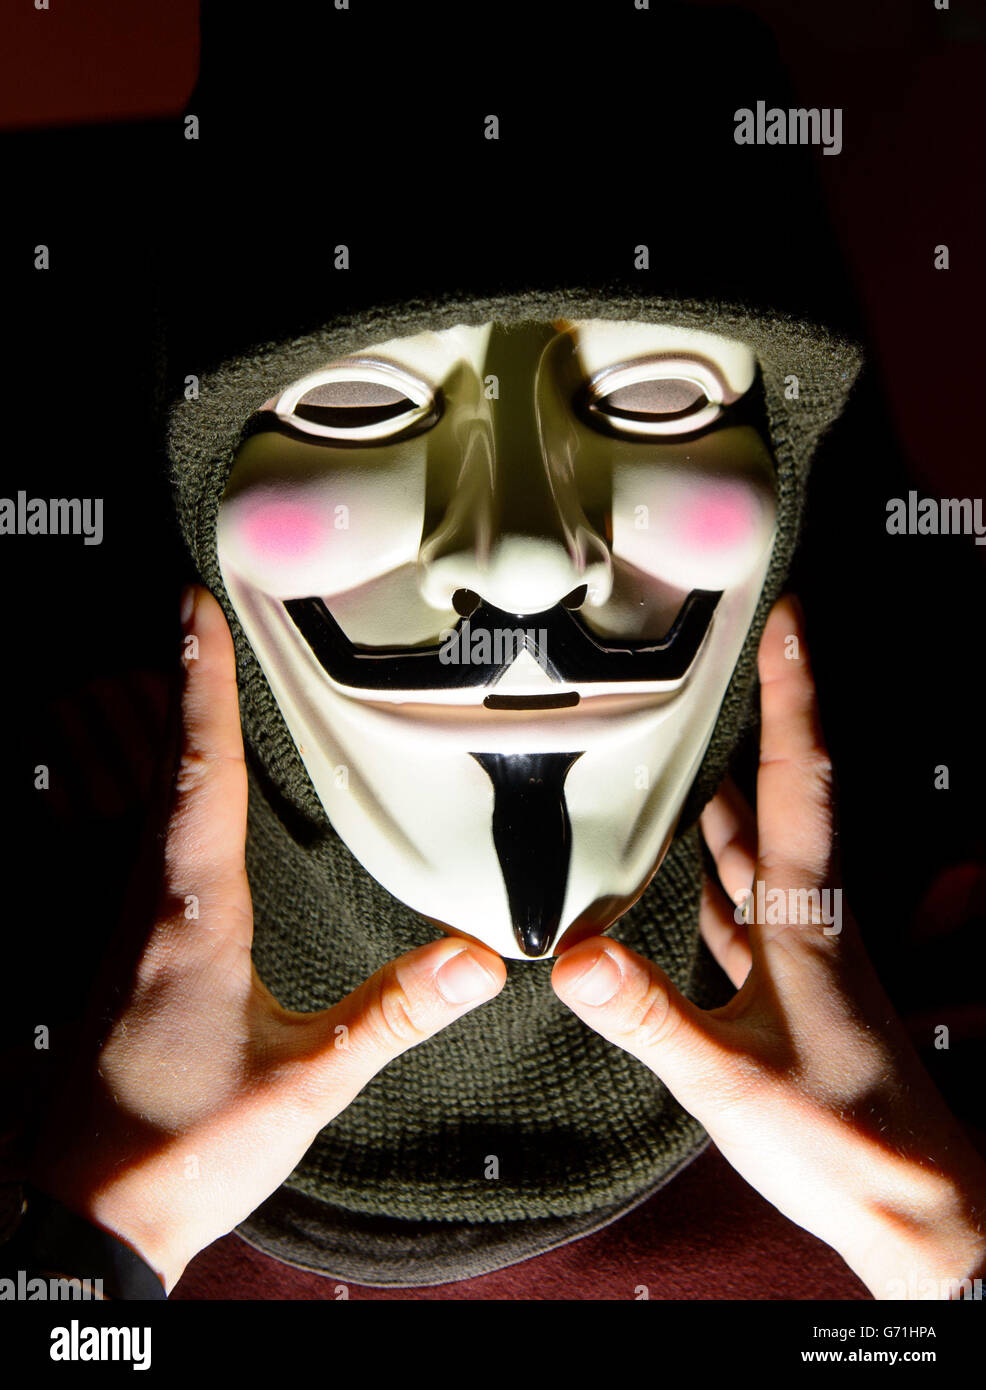 Evie Jeffreys ajusta un modelo con una máscara del cómic 'V for Vendetta', parte de la exposición 'Comics Unmasked - Art and Anarchy in the UK' en la British Library, Londres, que se extiende del 2 de mayo al 19 de agosto. Foto de stock